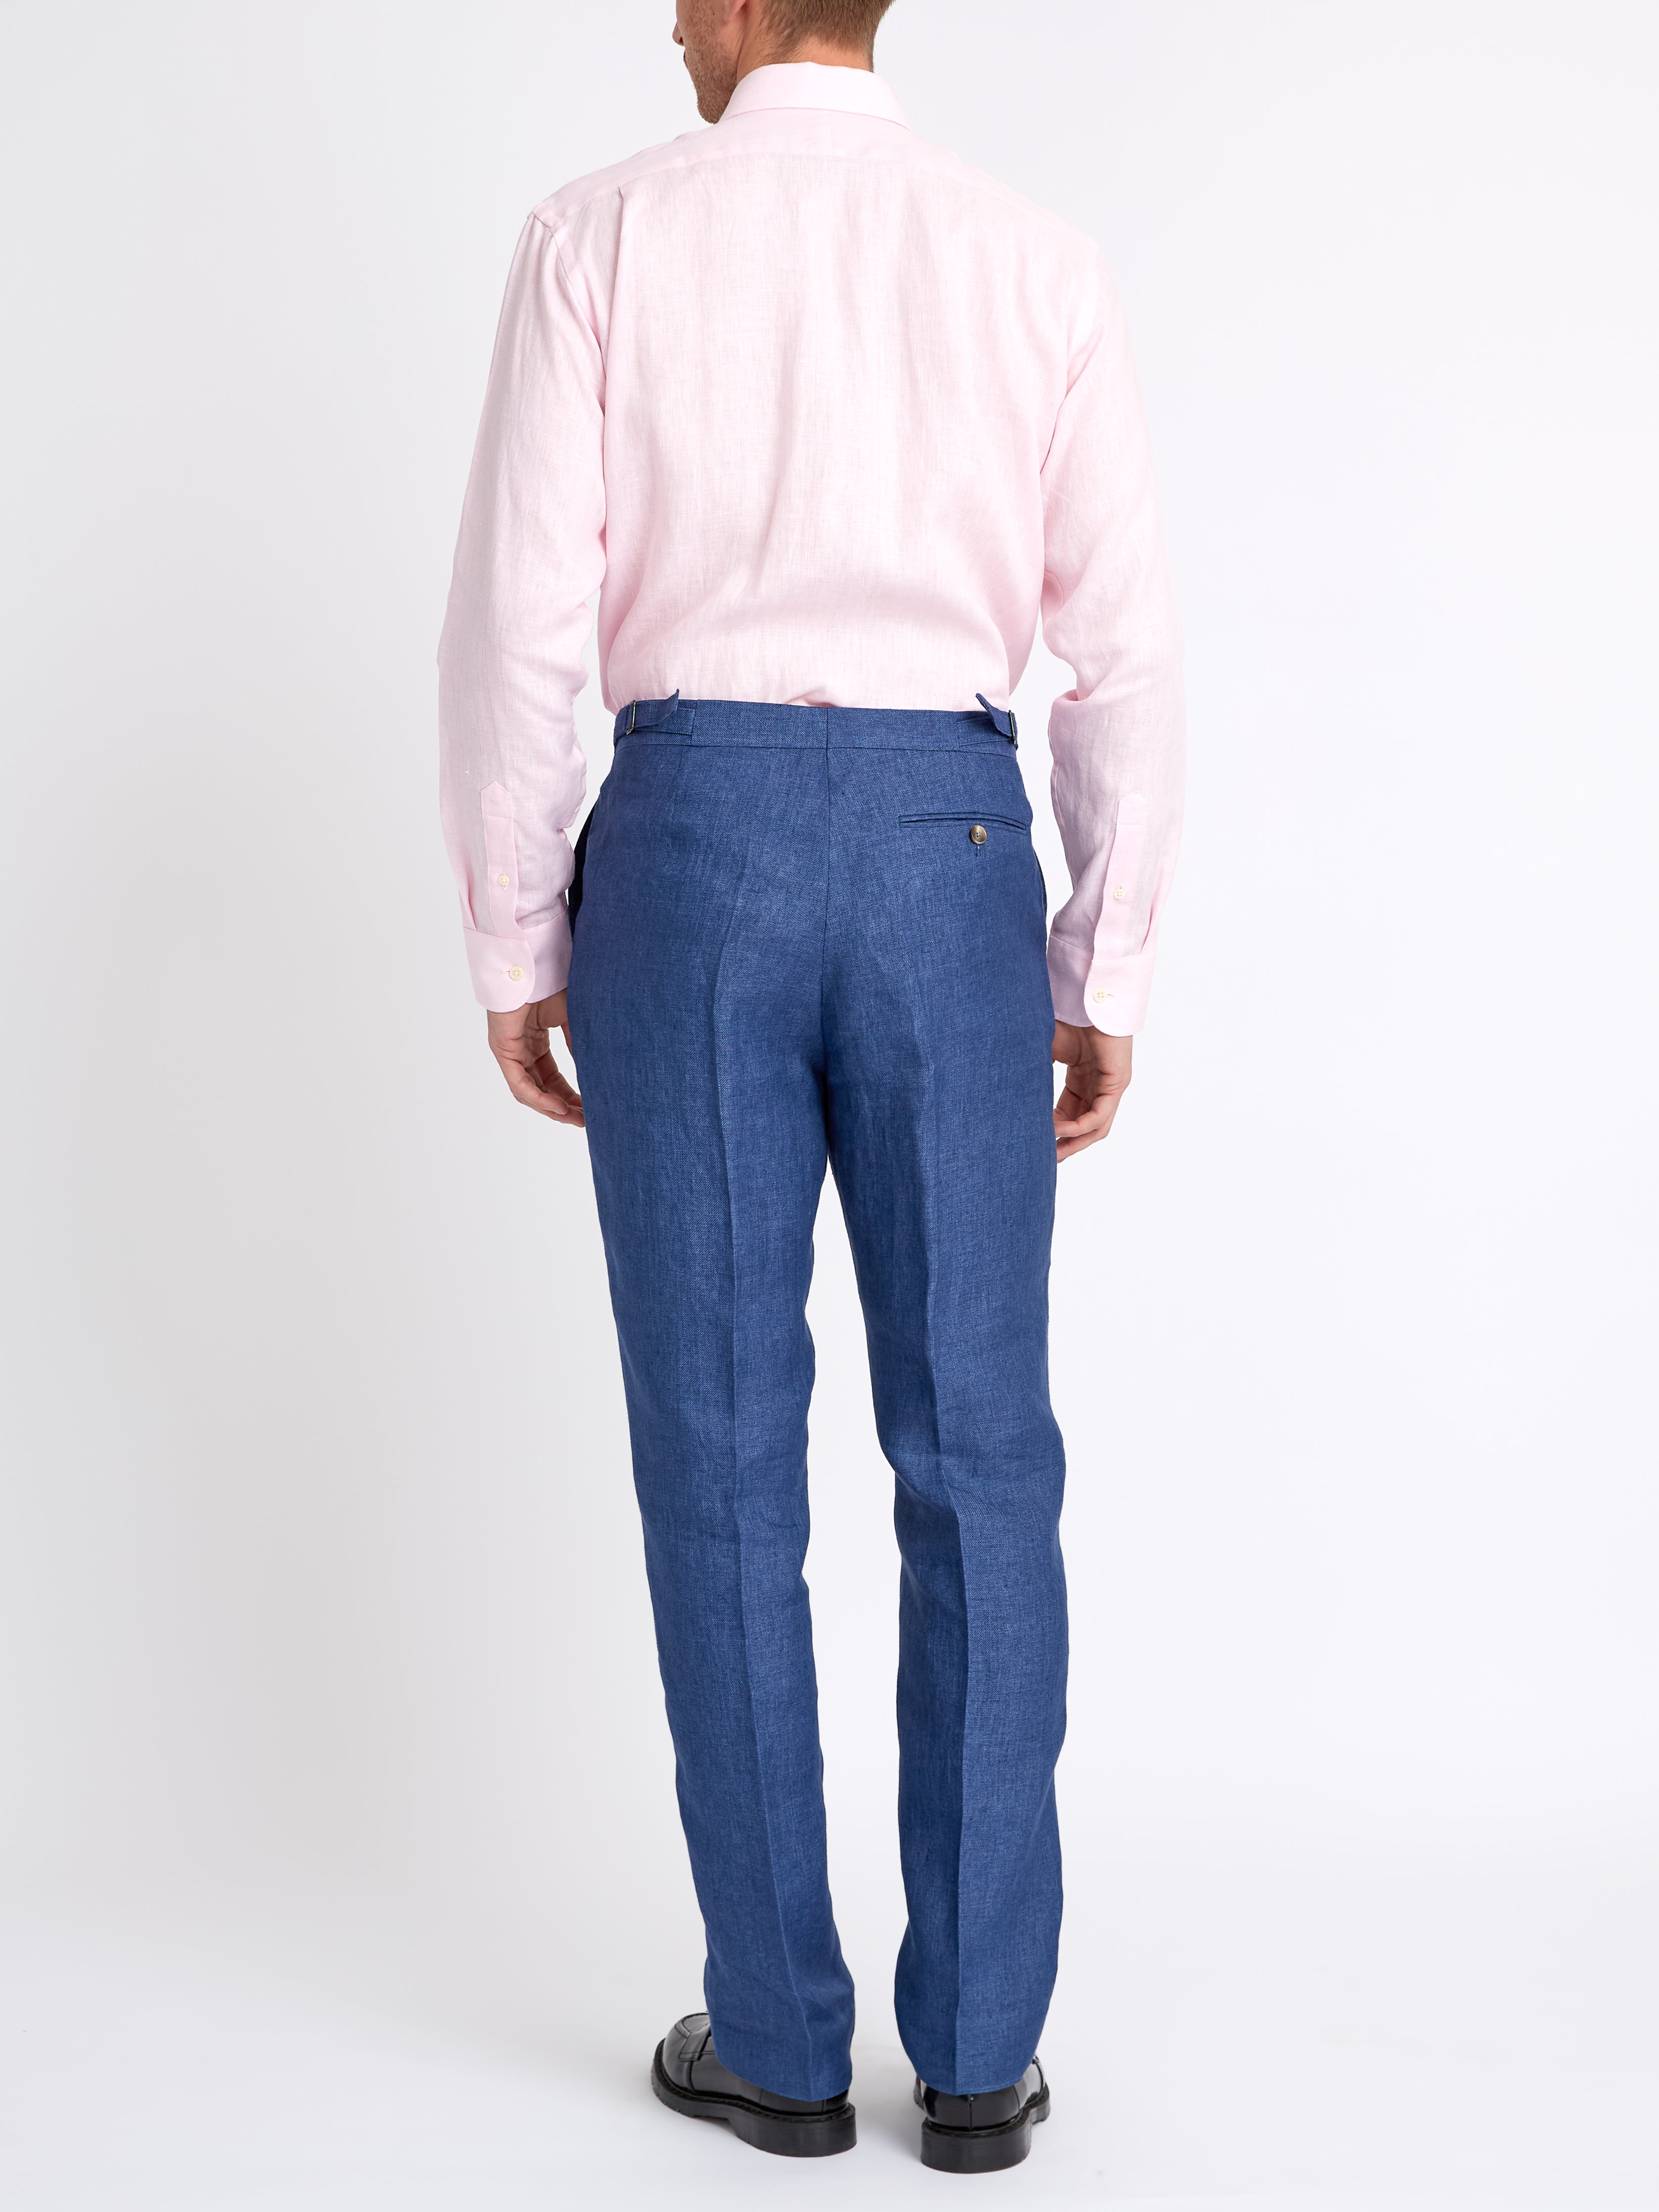 Pink Bridford Linen Cutaway Collar Shirt